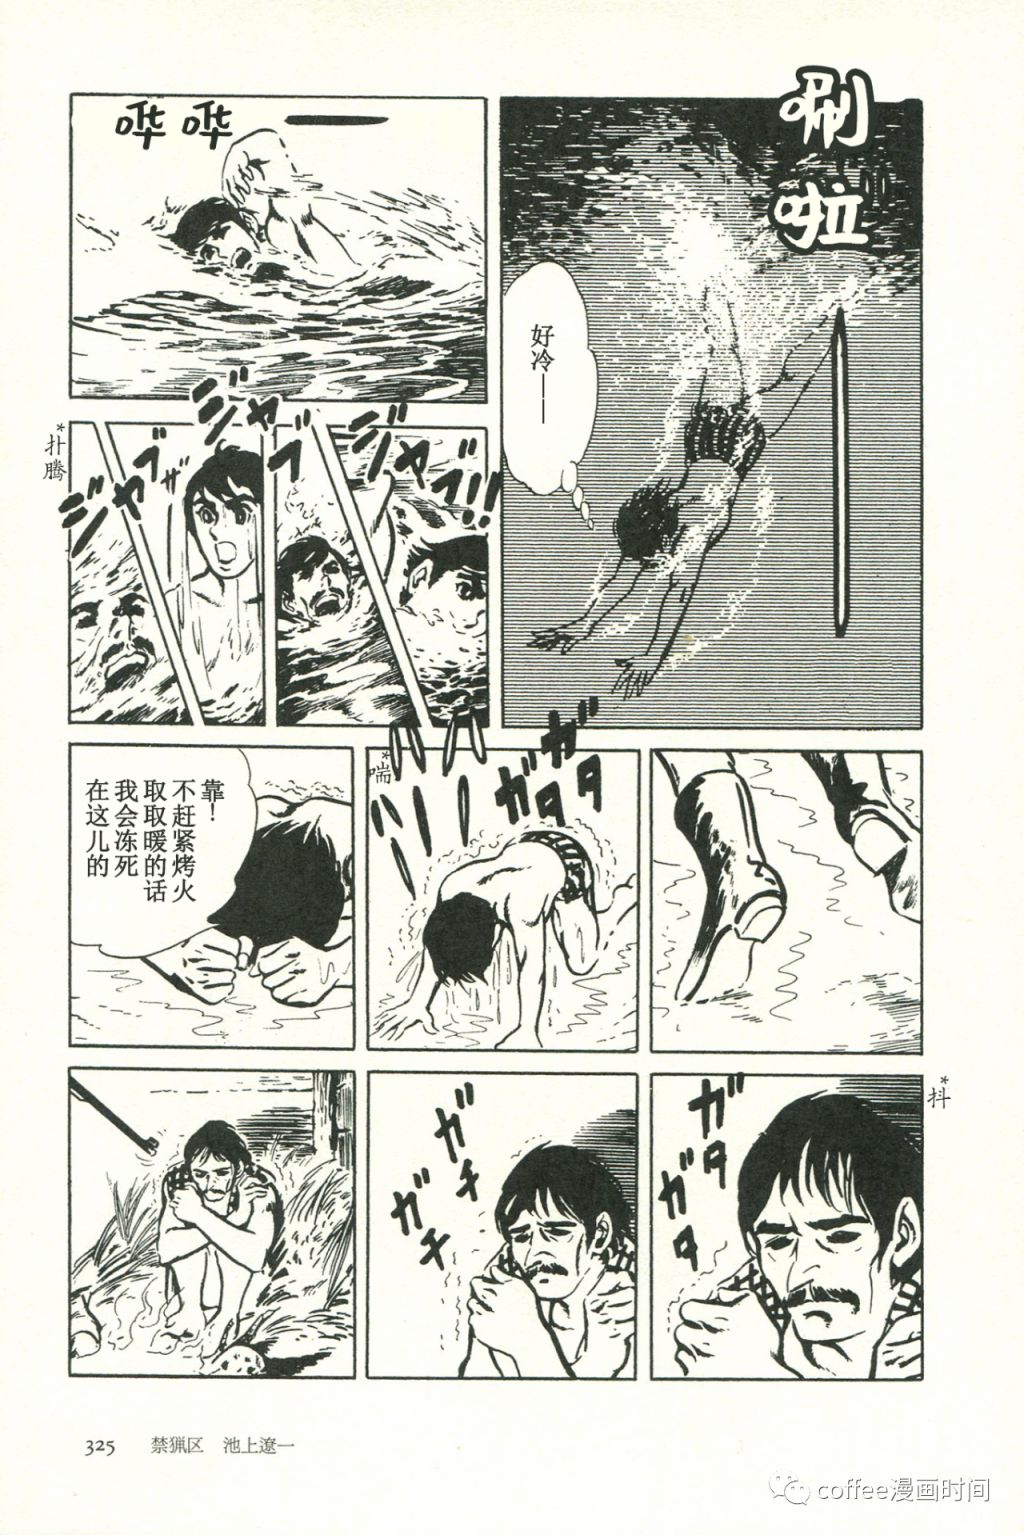 日本短篇漫畫傑作集 - 池上遼一《禁獵區》 - 3